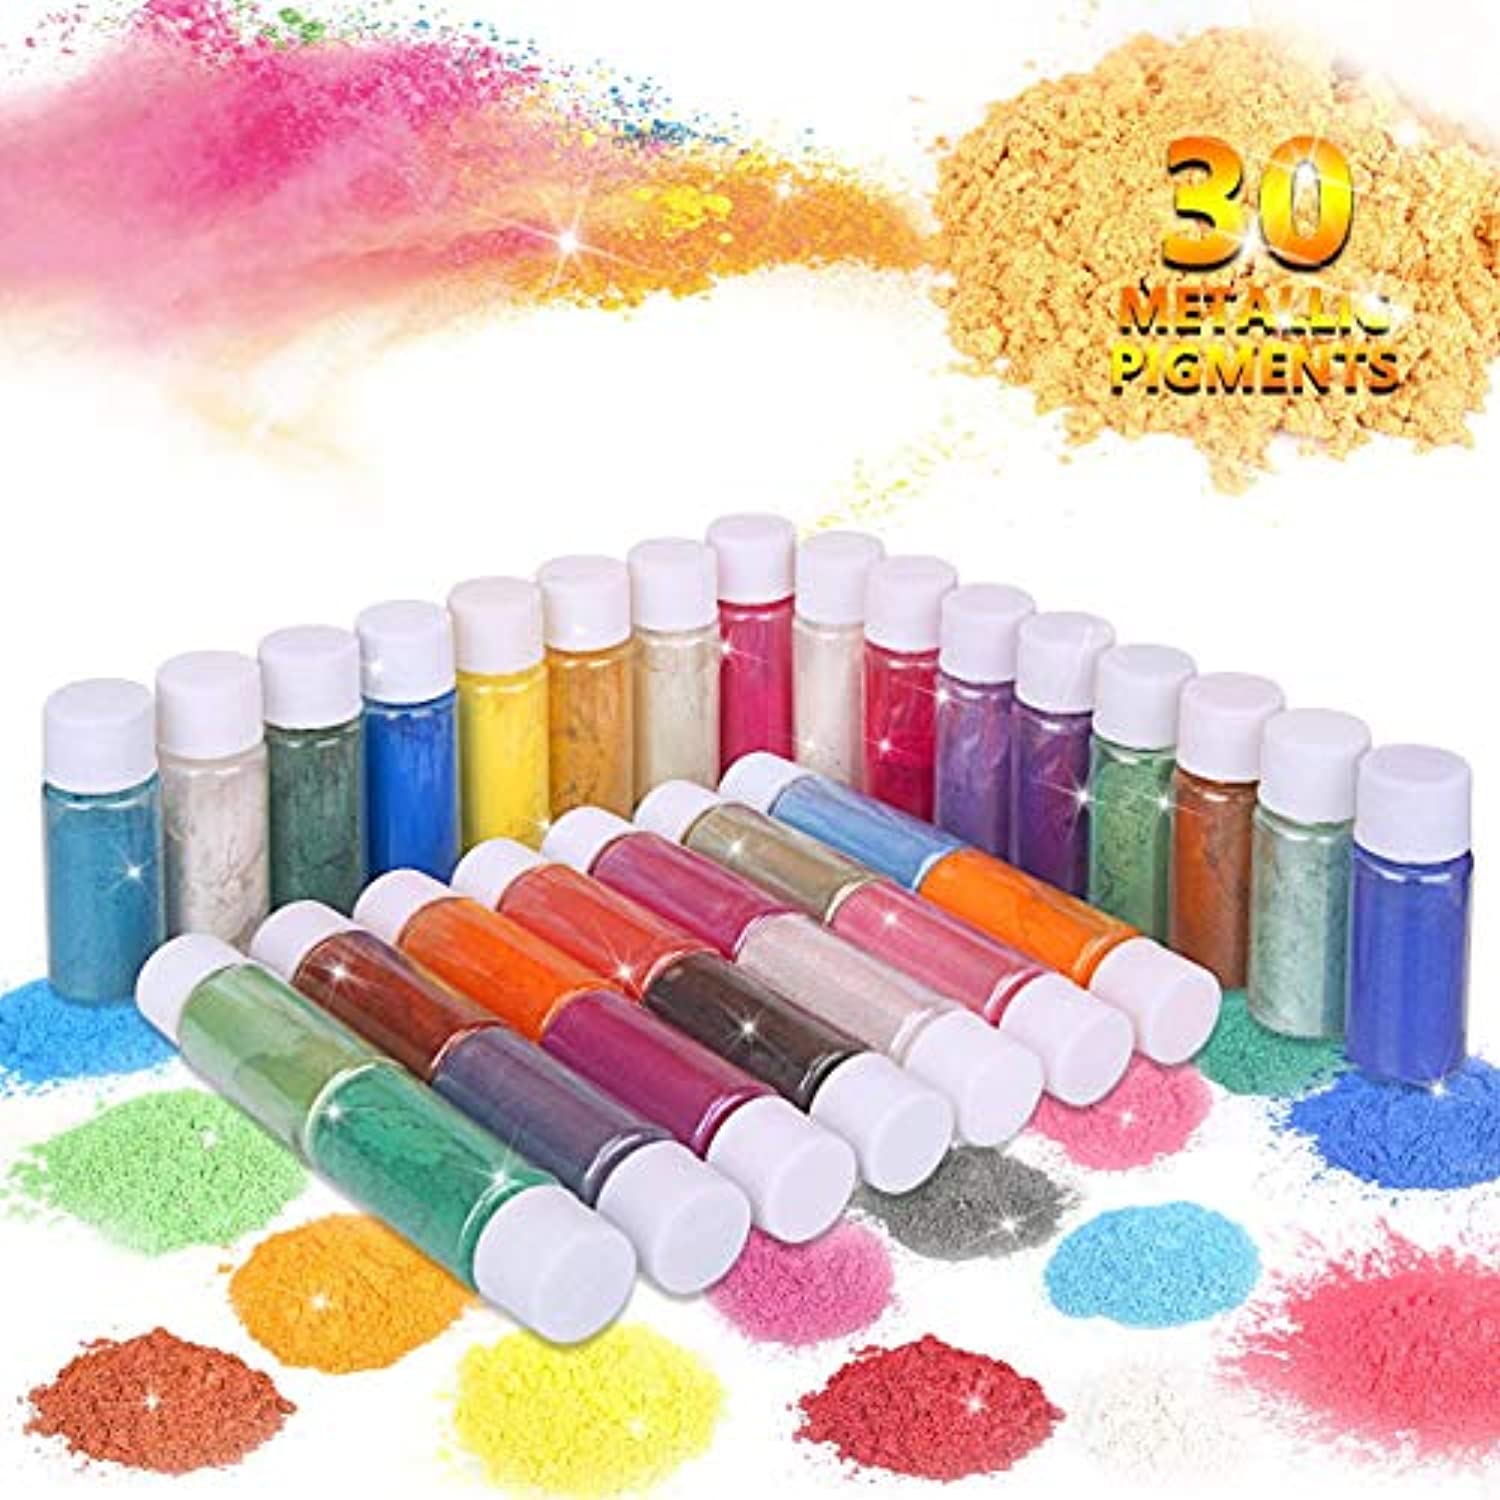  Polvo de mica, tinte de resina epoxi, colorante de jabón para  colorante de tinte de bomba de baño, juego de 36 pigmentos en polvo, polvo  de mica orgánico para moldes de